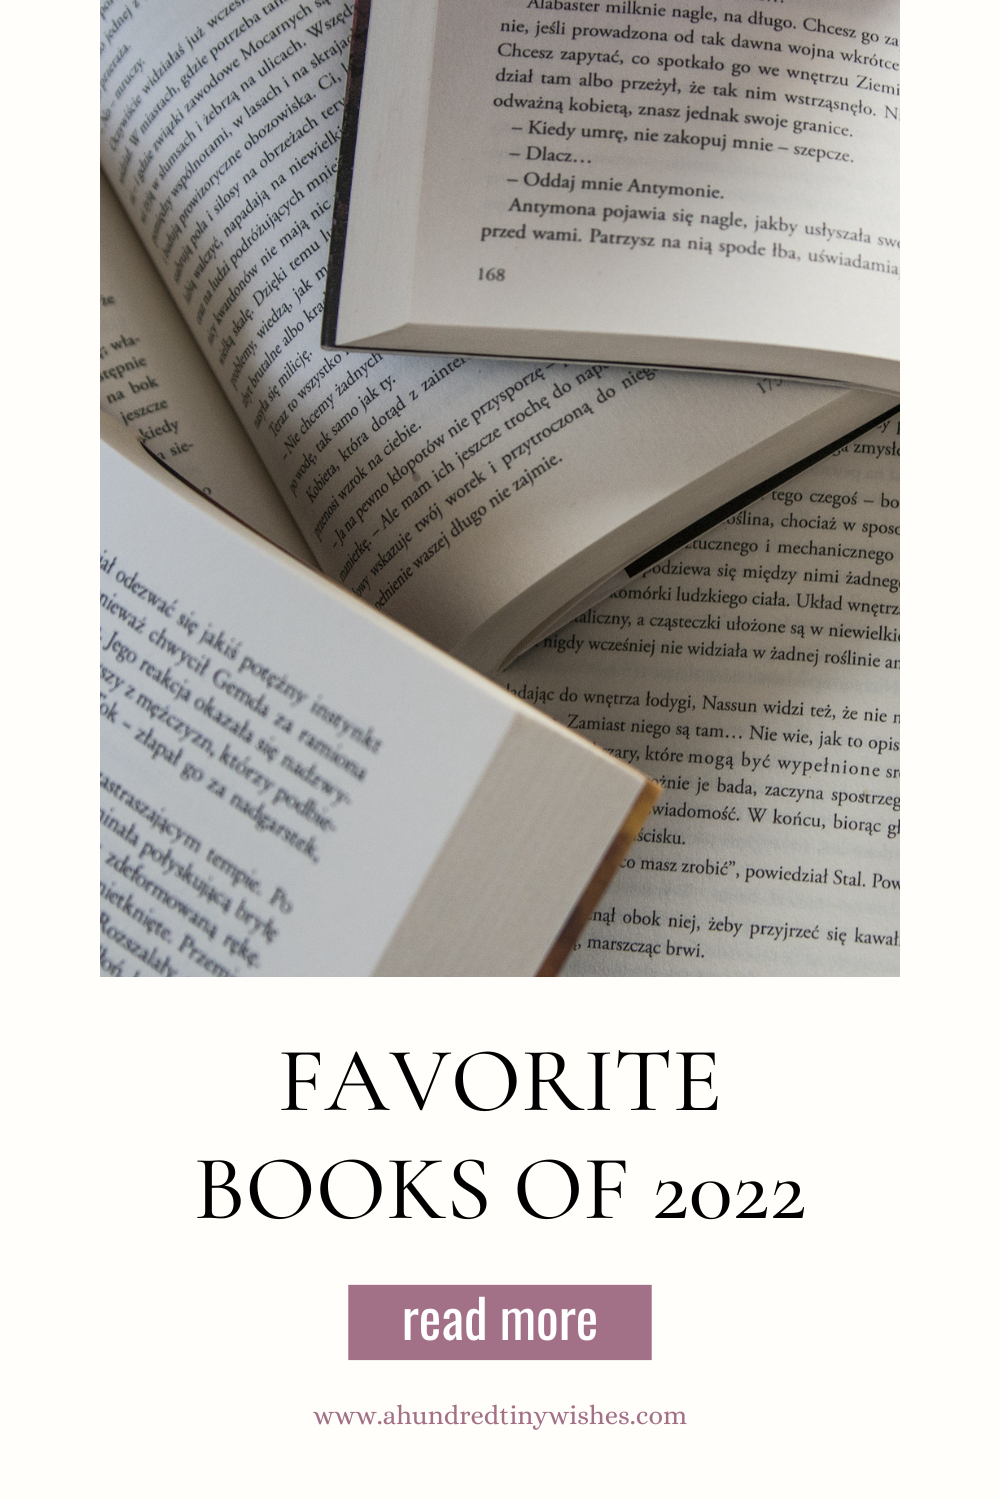 Top 12 Romance books of 2022